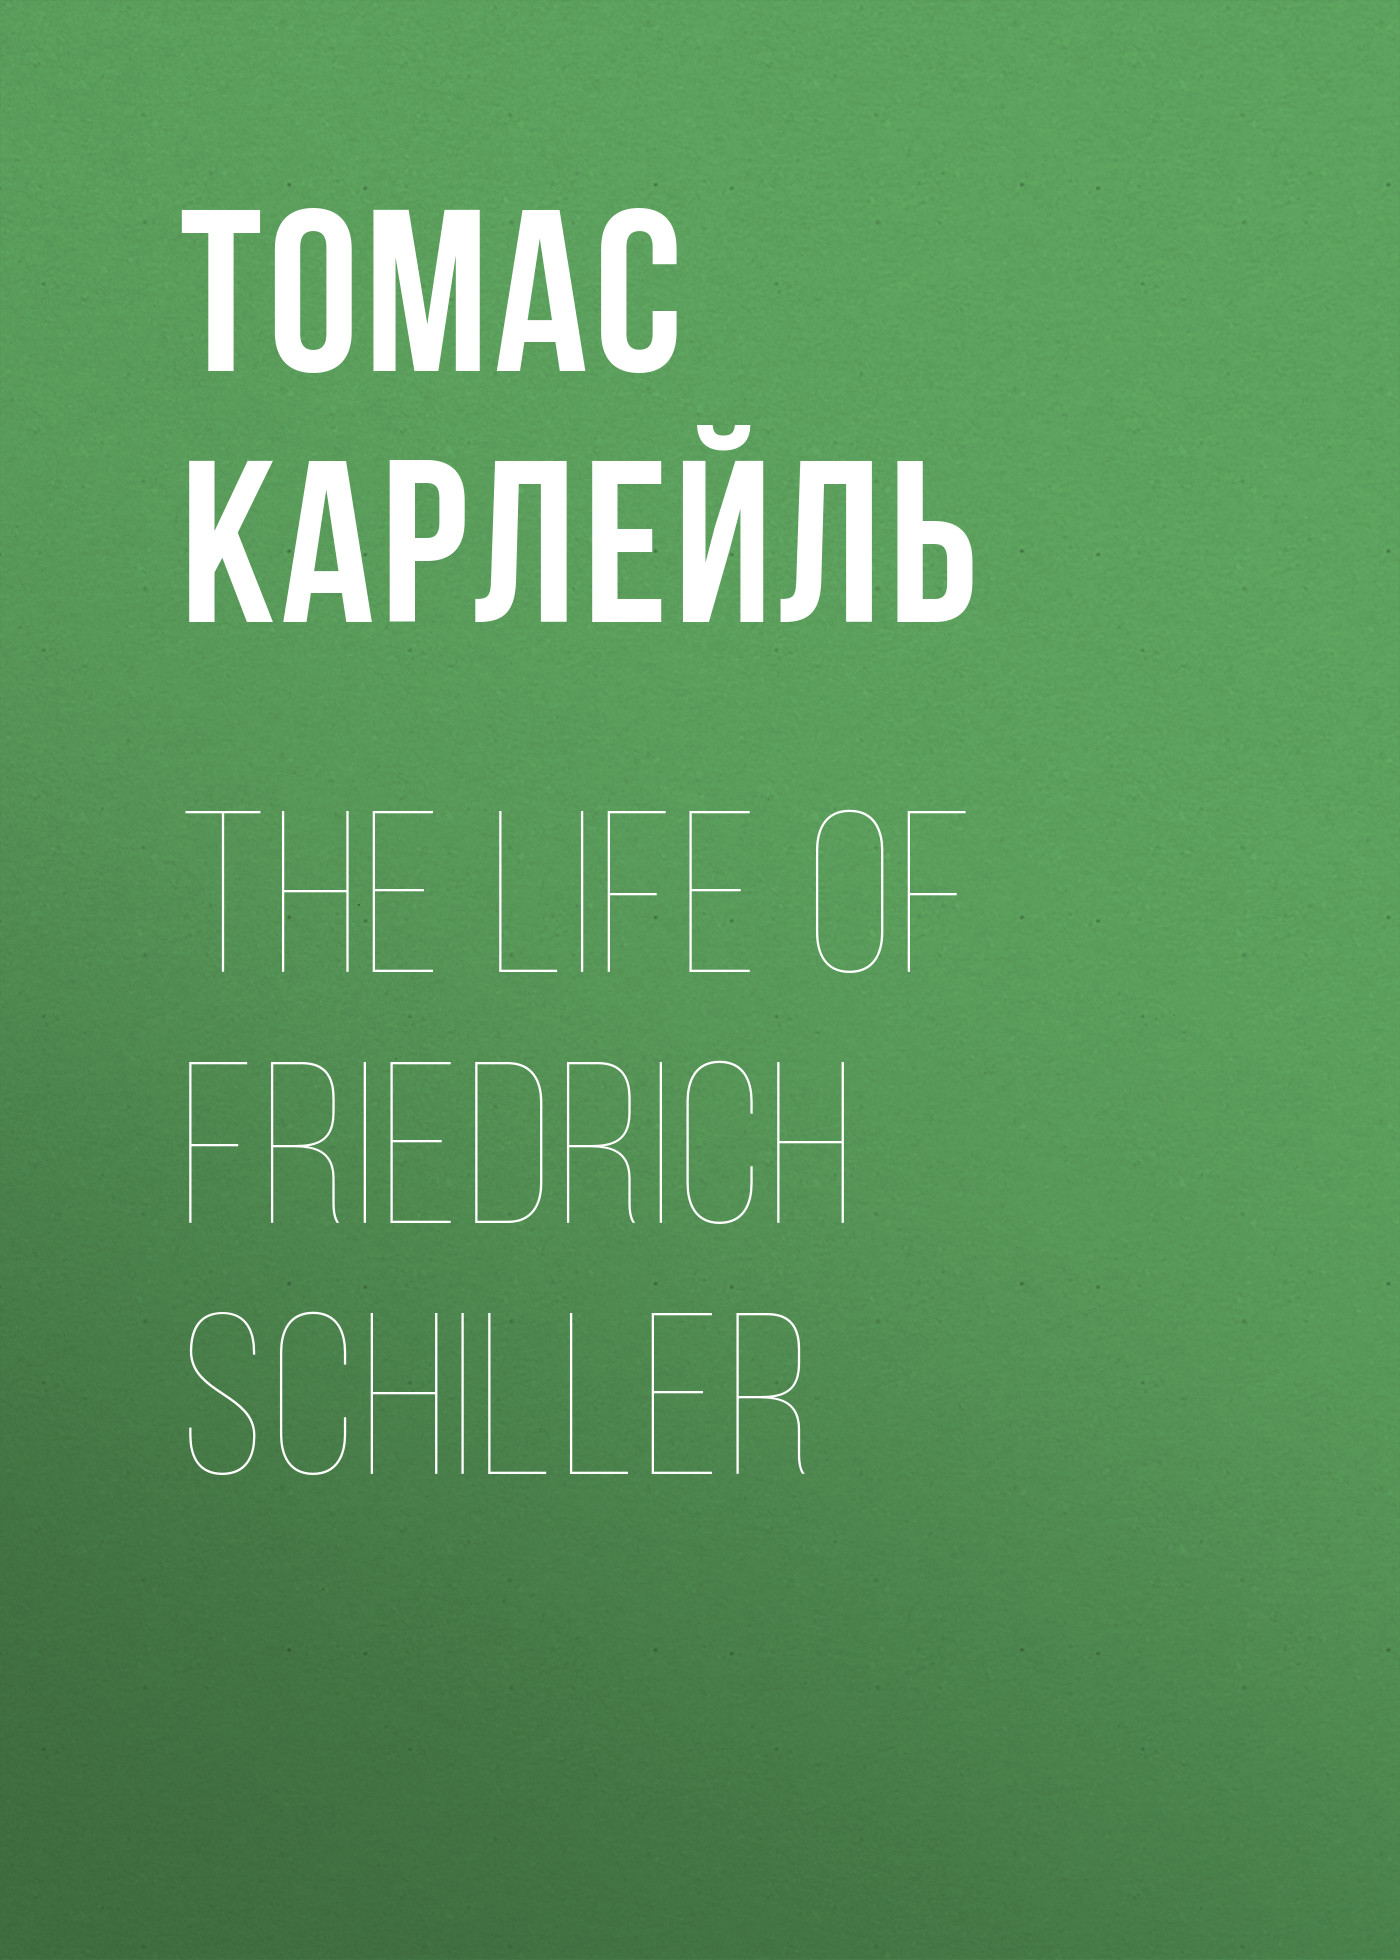 Книга The Life of Friedrich Schiller из серии , созданная Томас Карлейль, может относится к жанру Биографии и Мемуары, Философия, Зарубежная образовательная литература, Зарубежная старинная литература. Стоимость электронной книги The Life of Friedrich Schiller с идентификатором 34839718 составляет 0 руб.